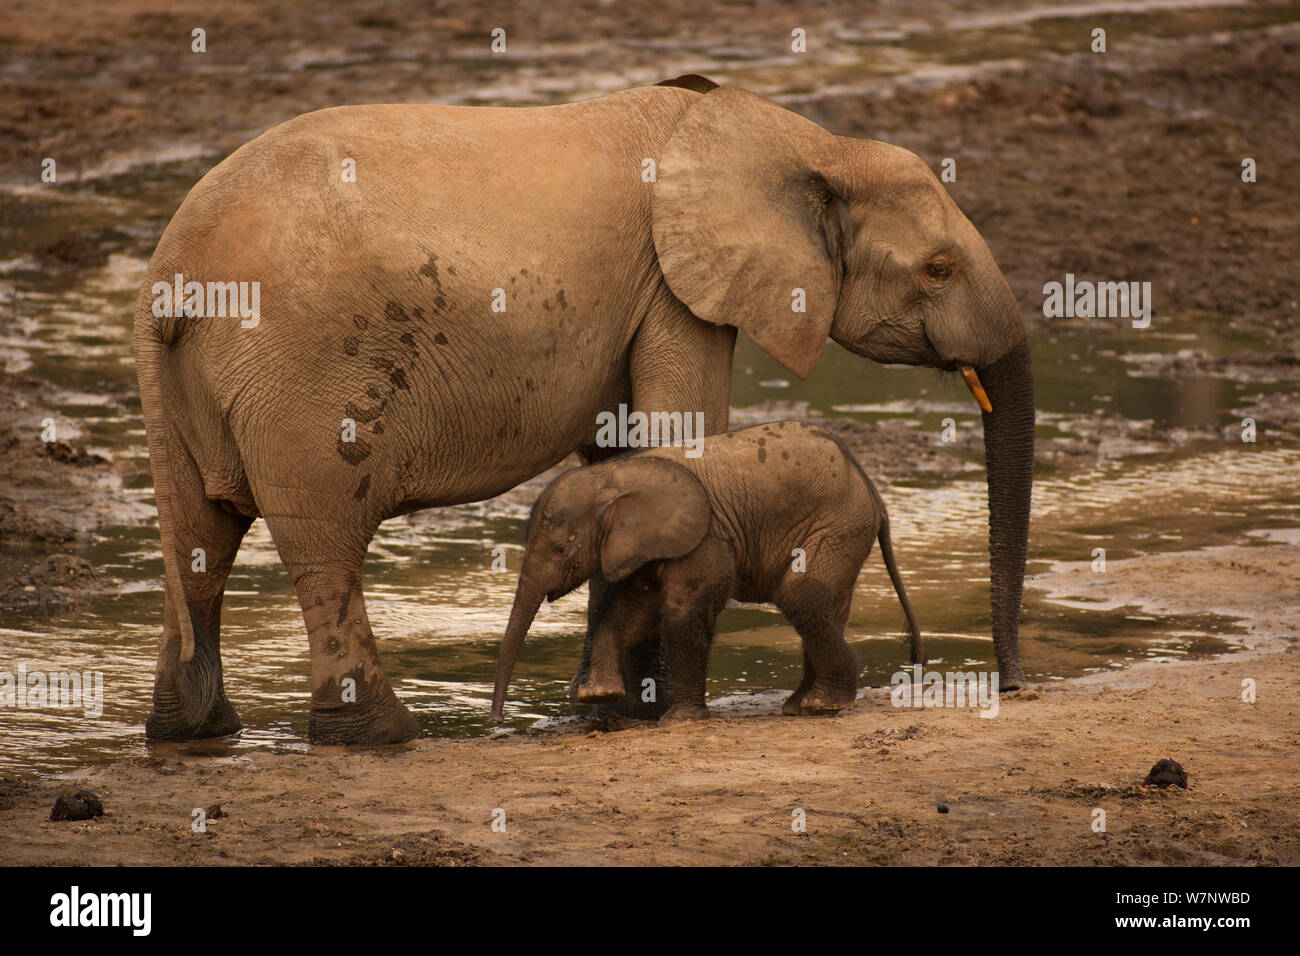 Elefante de bosque africano (Loxodonta africana cyclotis) madre y la pantorrilla visitando Dzanga Bai se alimentan de los sedimentos ricos en minerales, Parque Nacional Dzanga-Ndoki, República Centroafricana Foto de stock